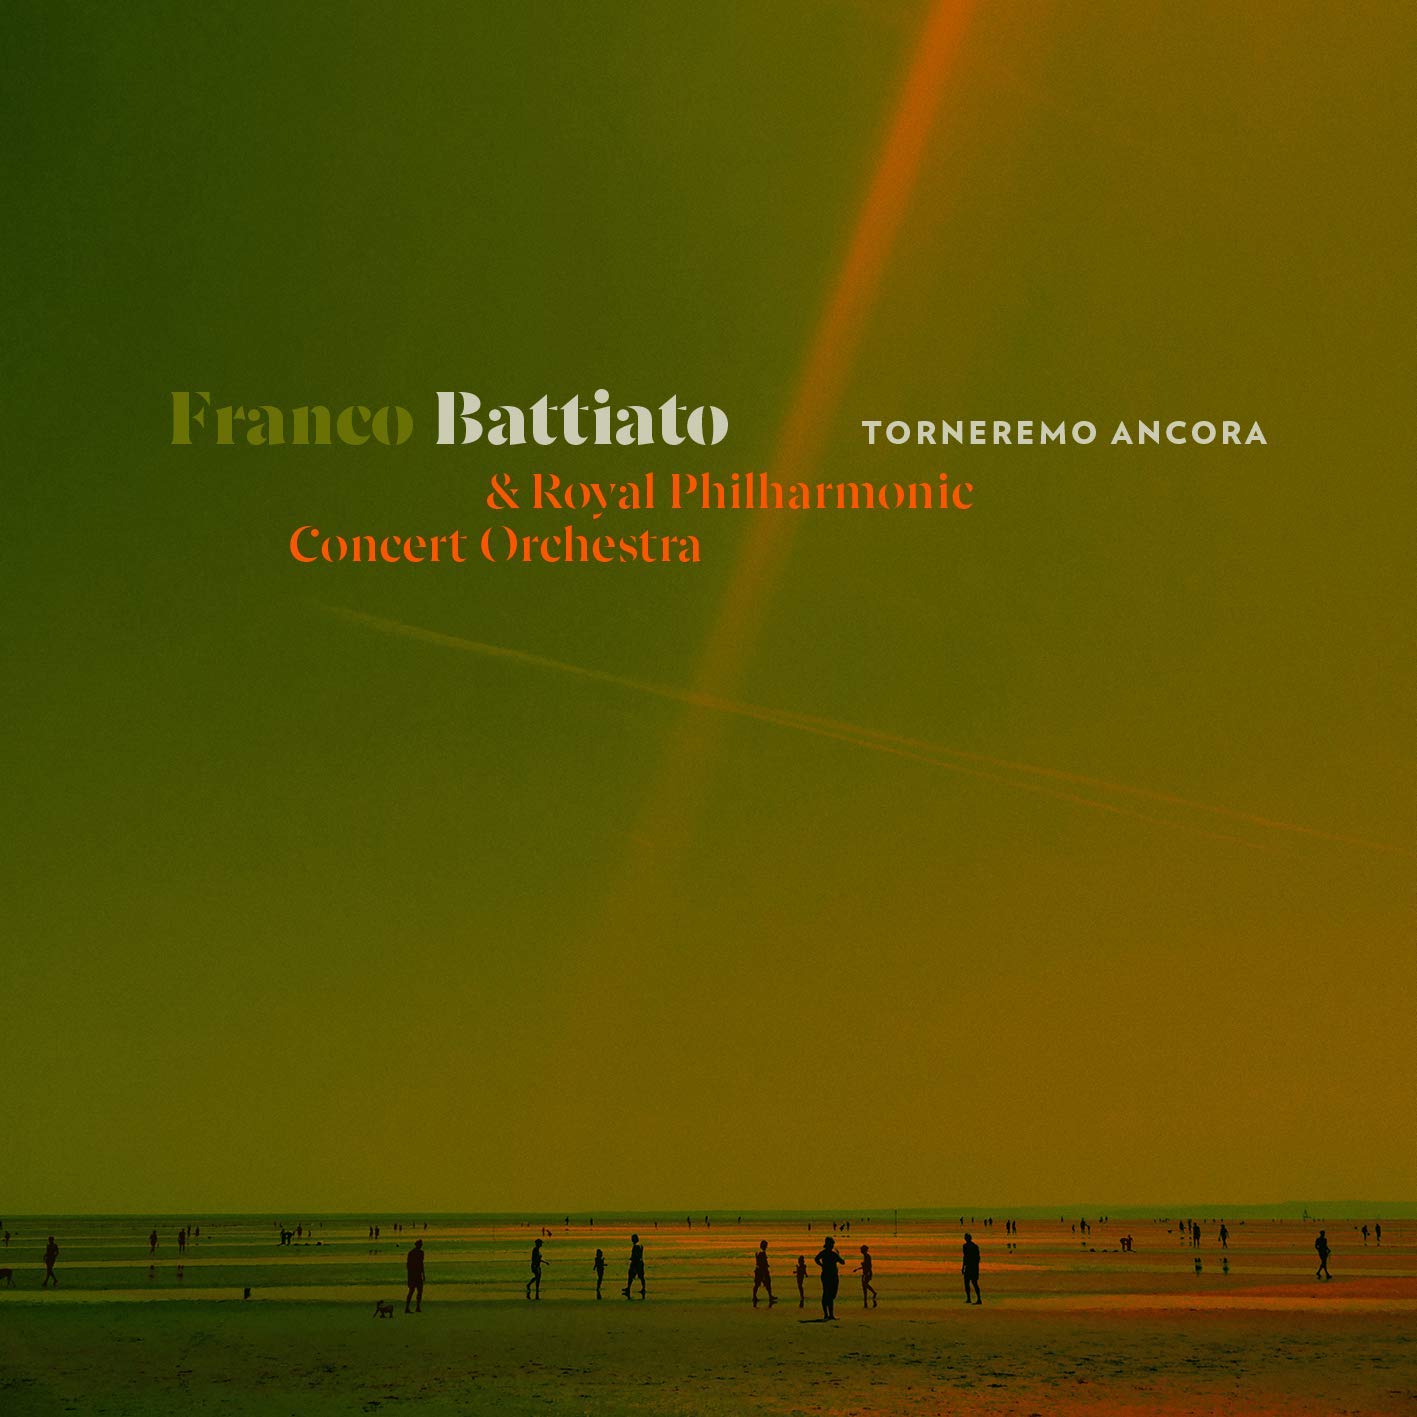 Torneremo ancora - Franco Battiato album 2019 copertina